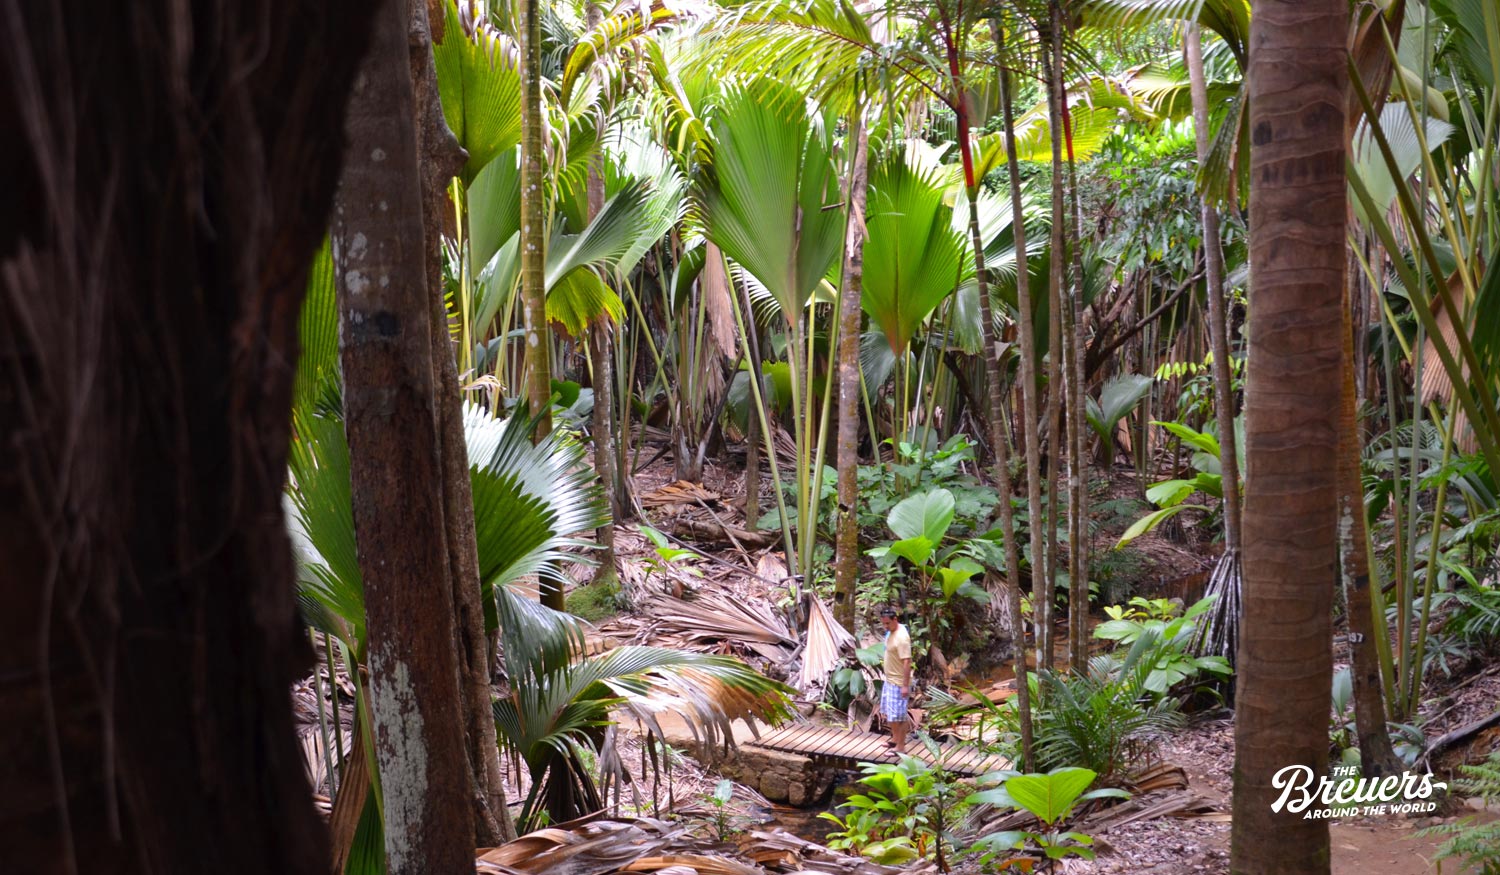 Valle de Mai ist ein Palmenwald auf der Seychellen Insel Praslin